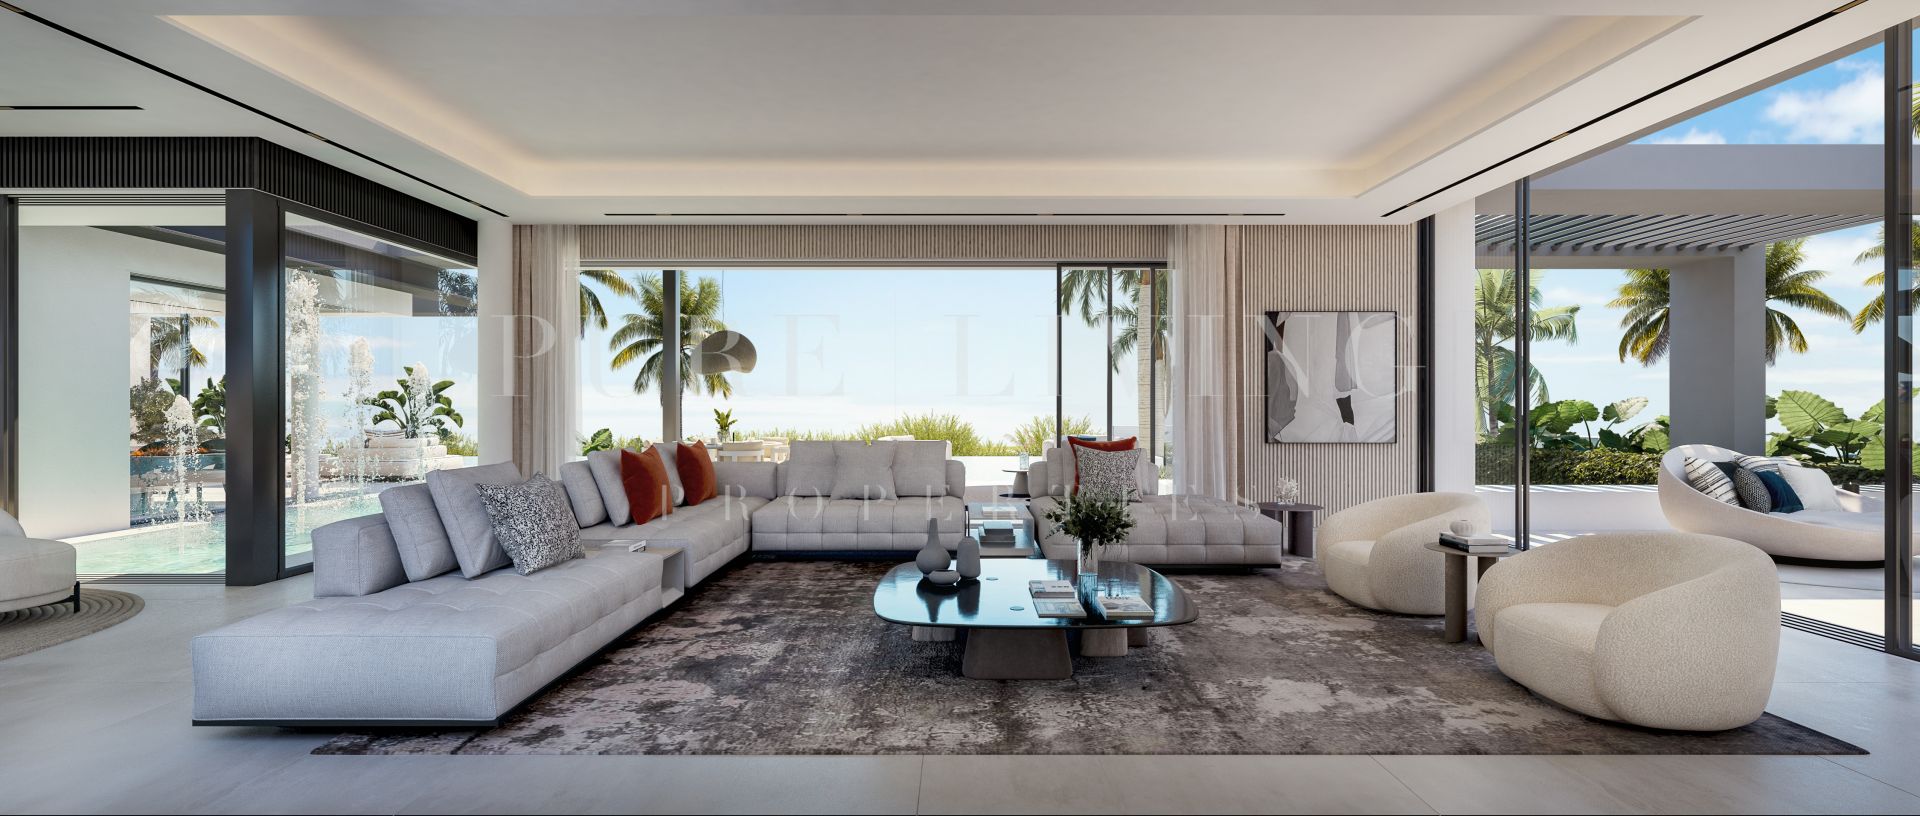 Luxury seven bedroom villa with amazing views in Paraiso Alto